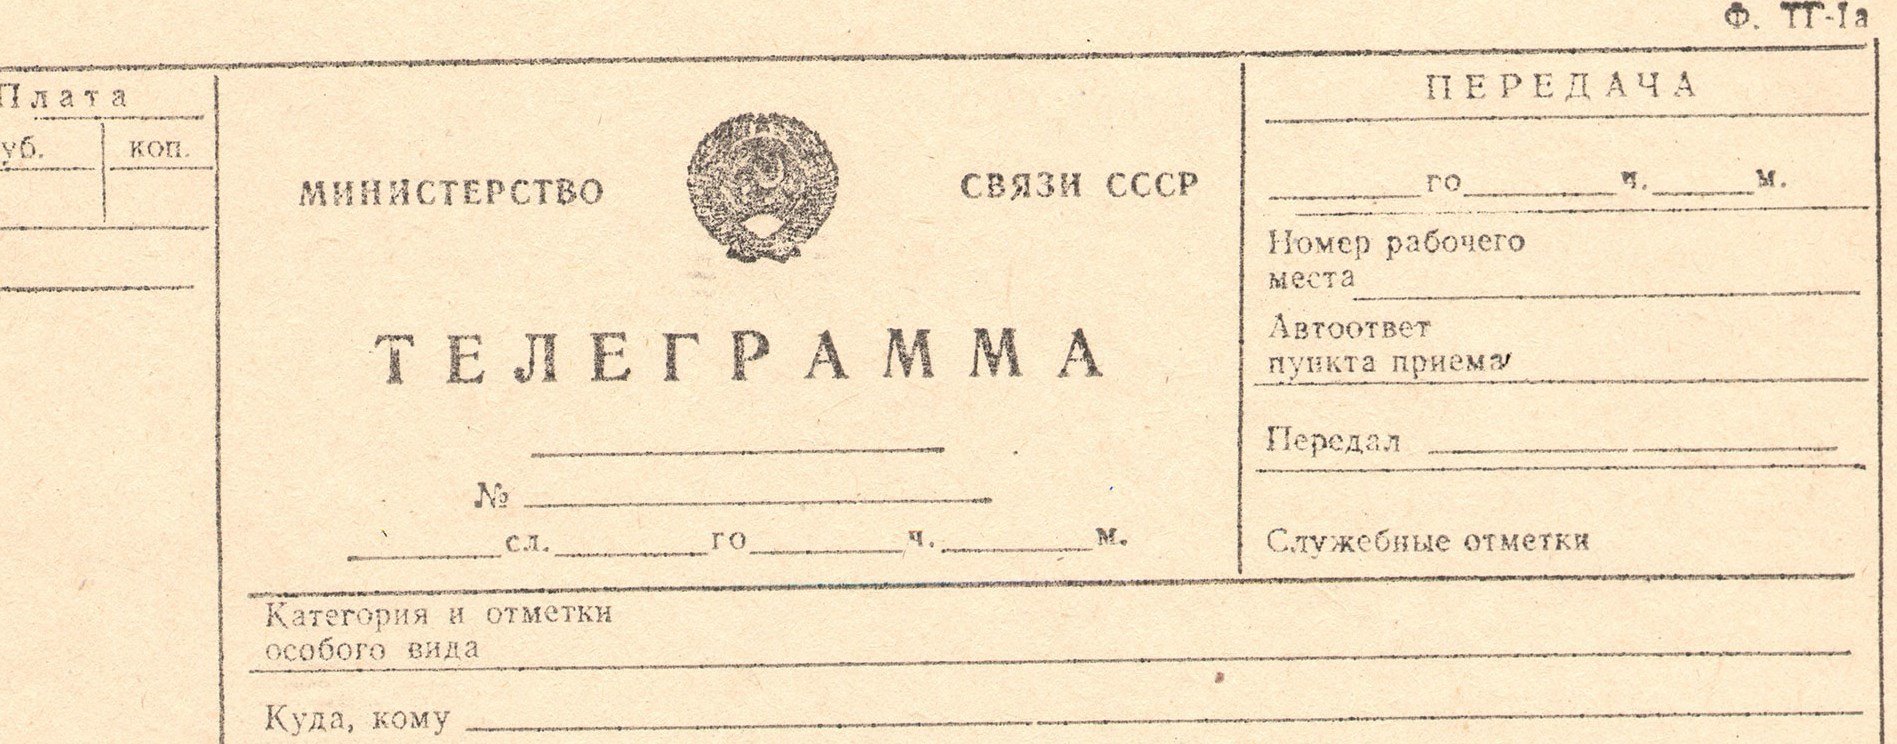 Как сделать чтобы телеграмма был на русском языке фото 68